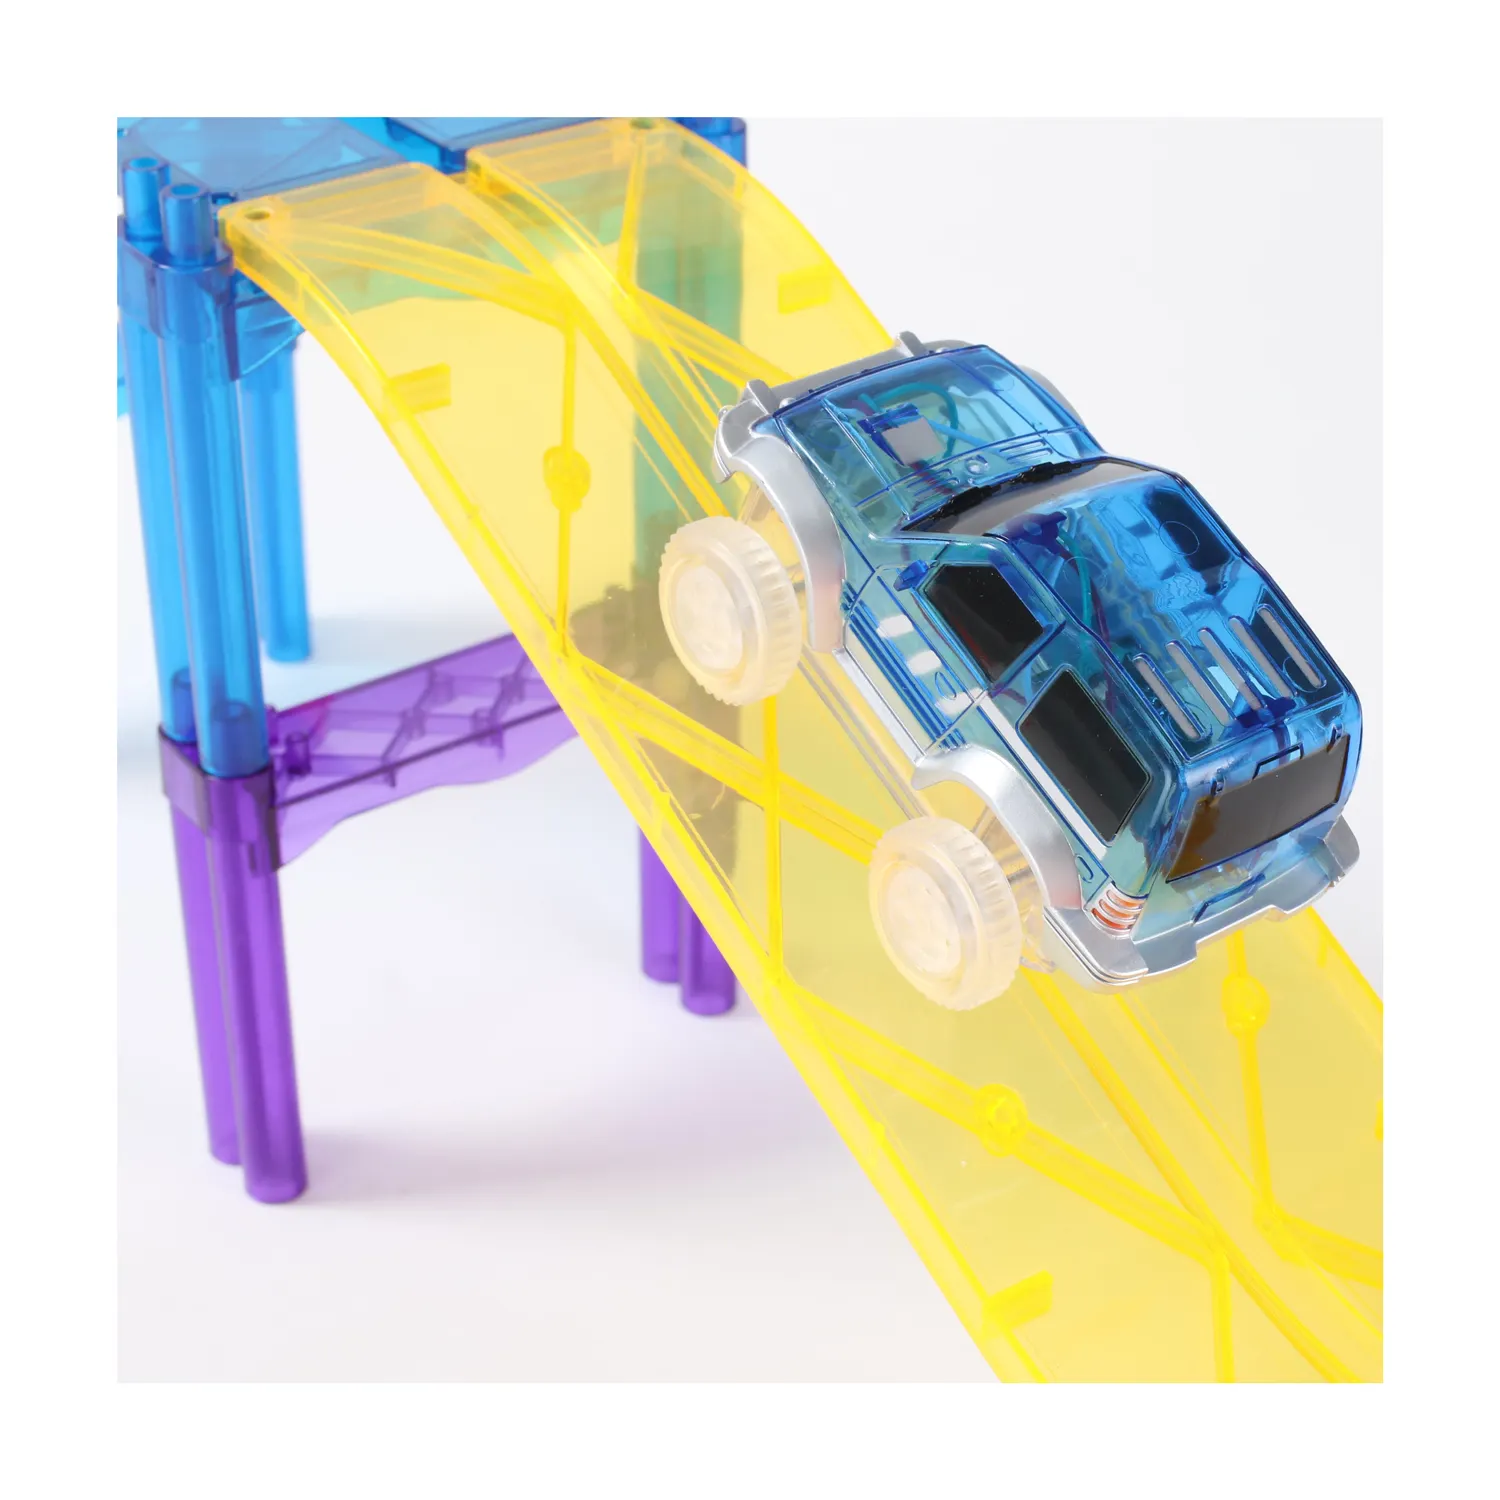 Petites voitures à construire magnétique en plastique, jouets pour enfants, blocs de construction, piste de course, marbre, course, carrelage électrique